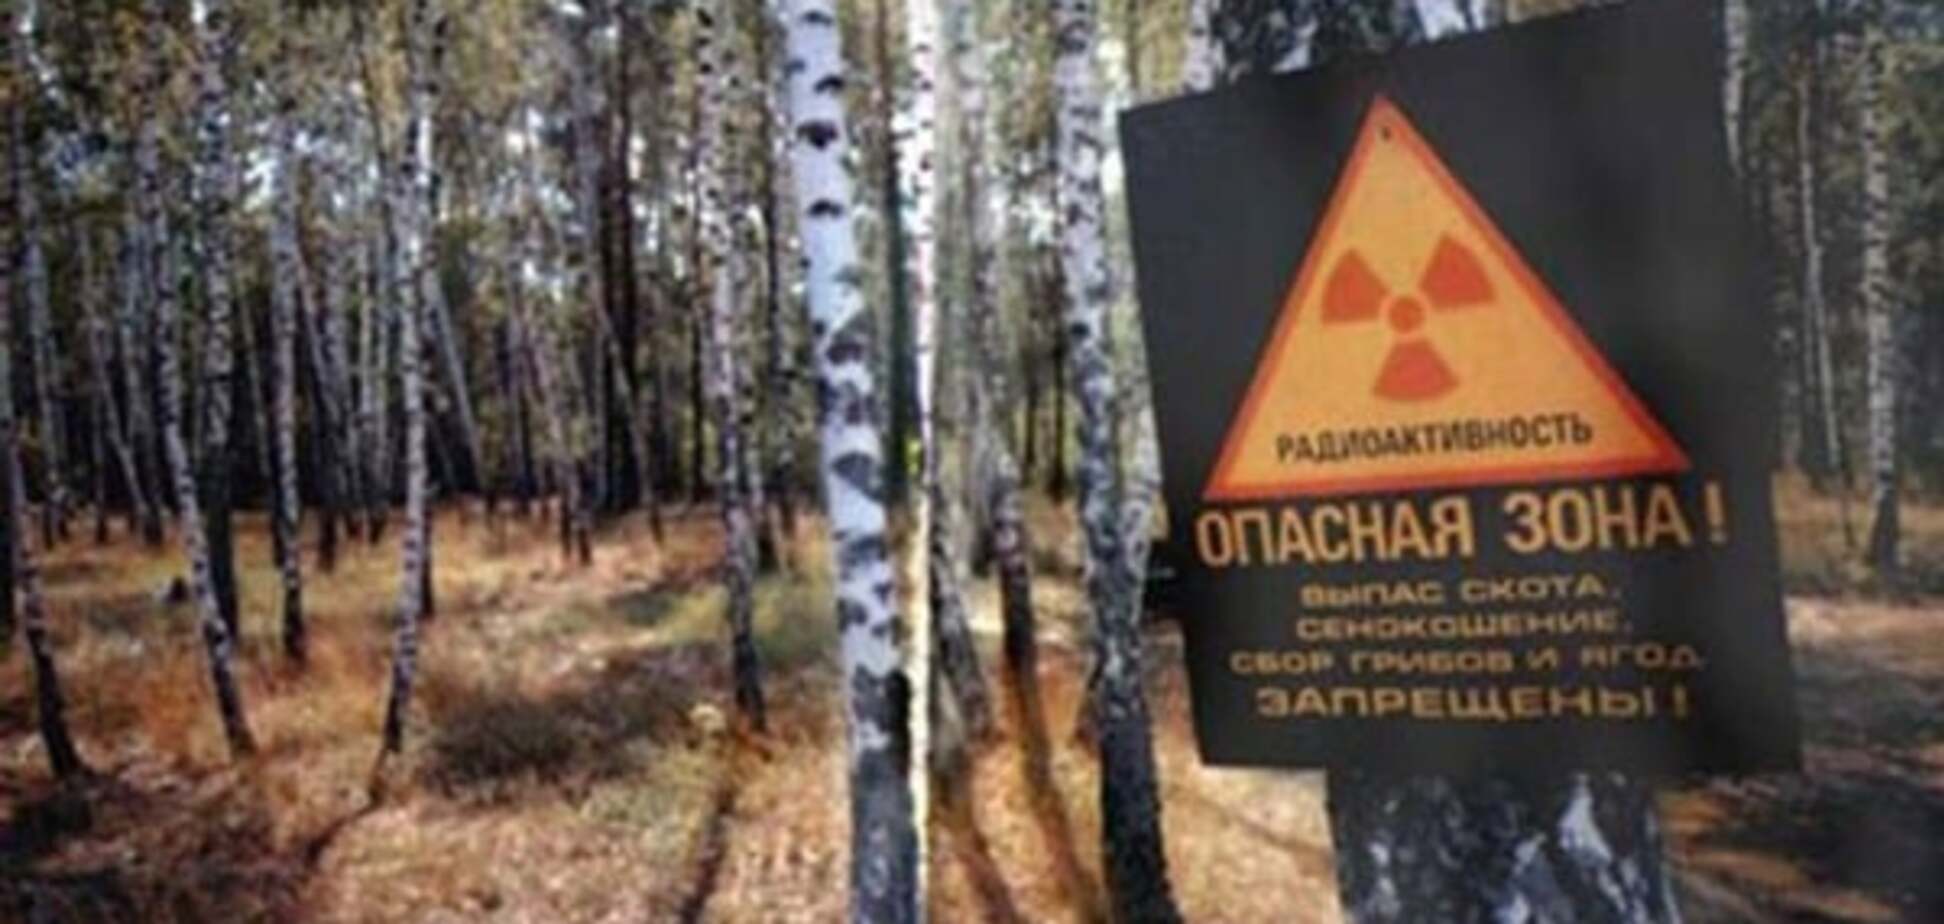 Період напіврозпаду закінчився: експерт заявила, що частина Чорнобильської зони втрачена назавжди